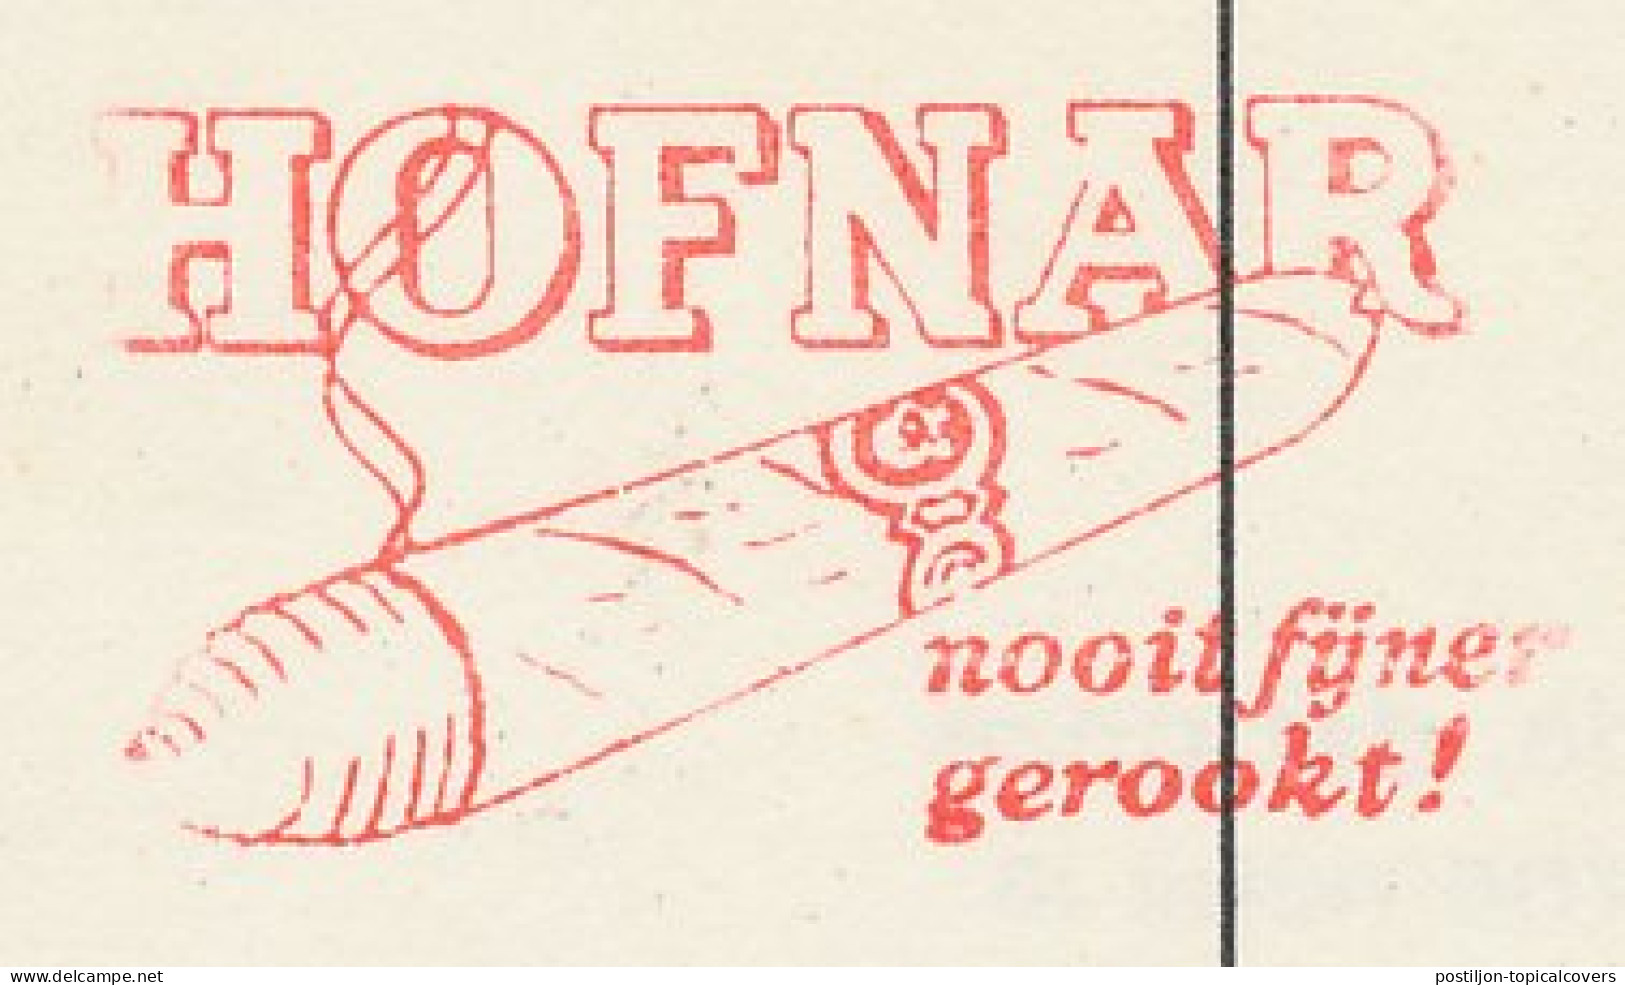 Meter Card Netherlands 1974 Cigar - Hofnar - Valkenswaard - Tabac